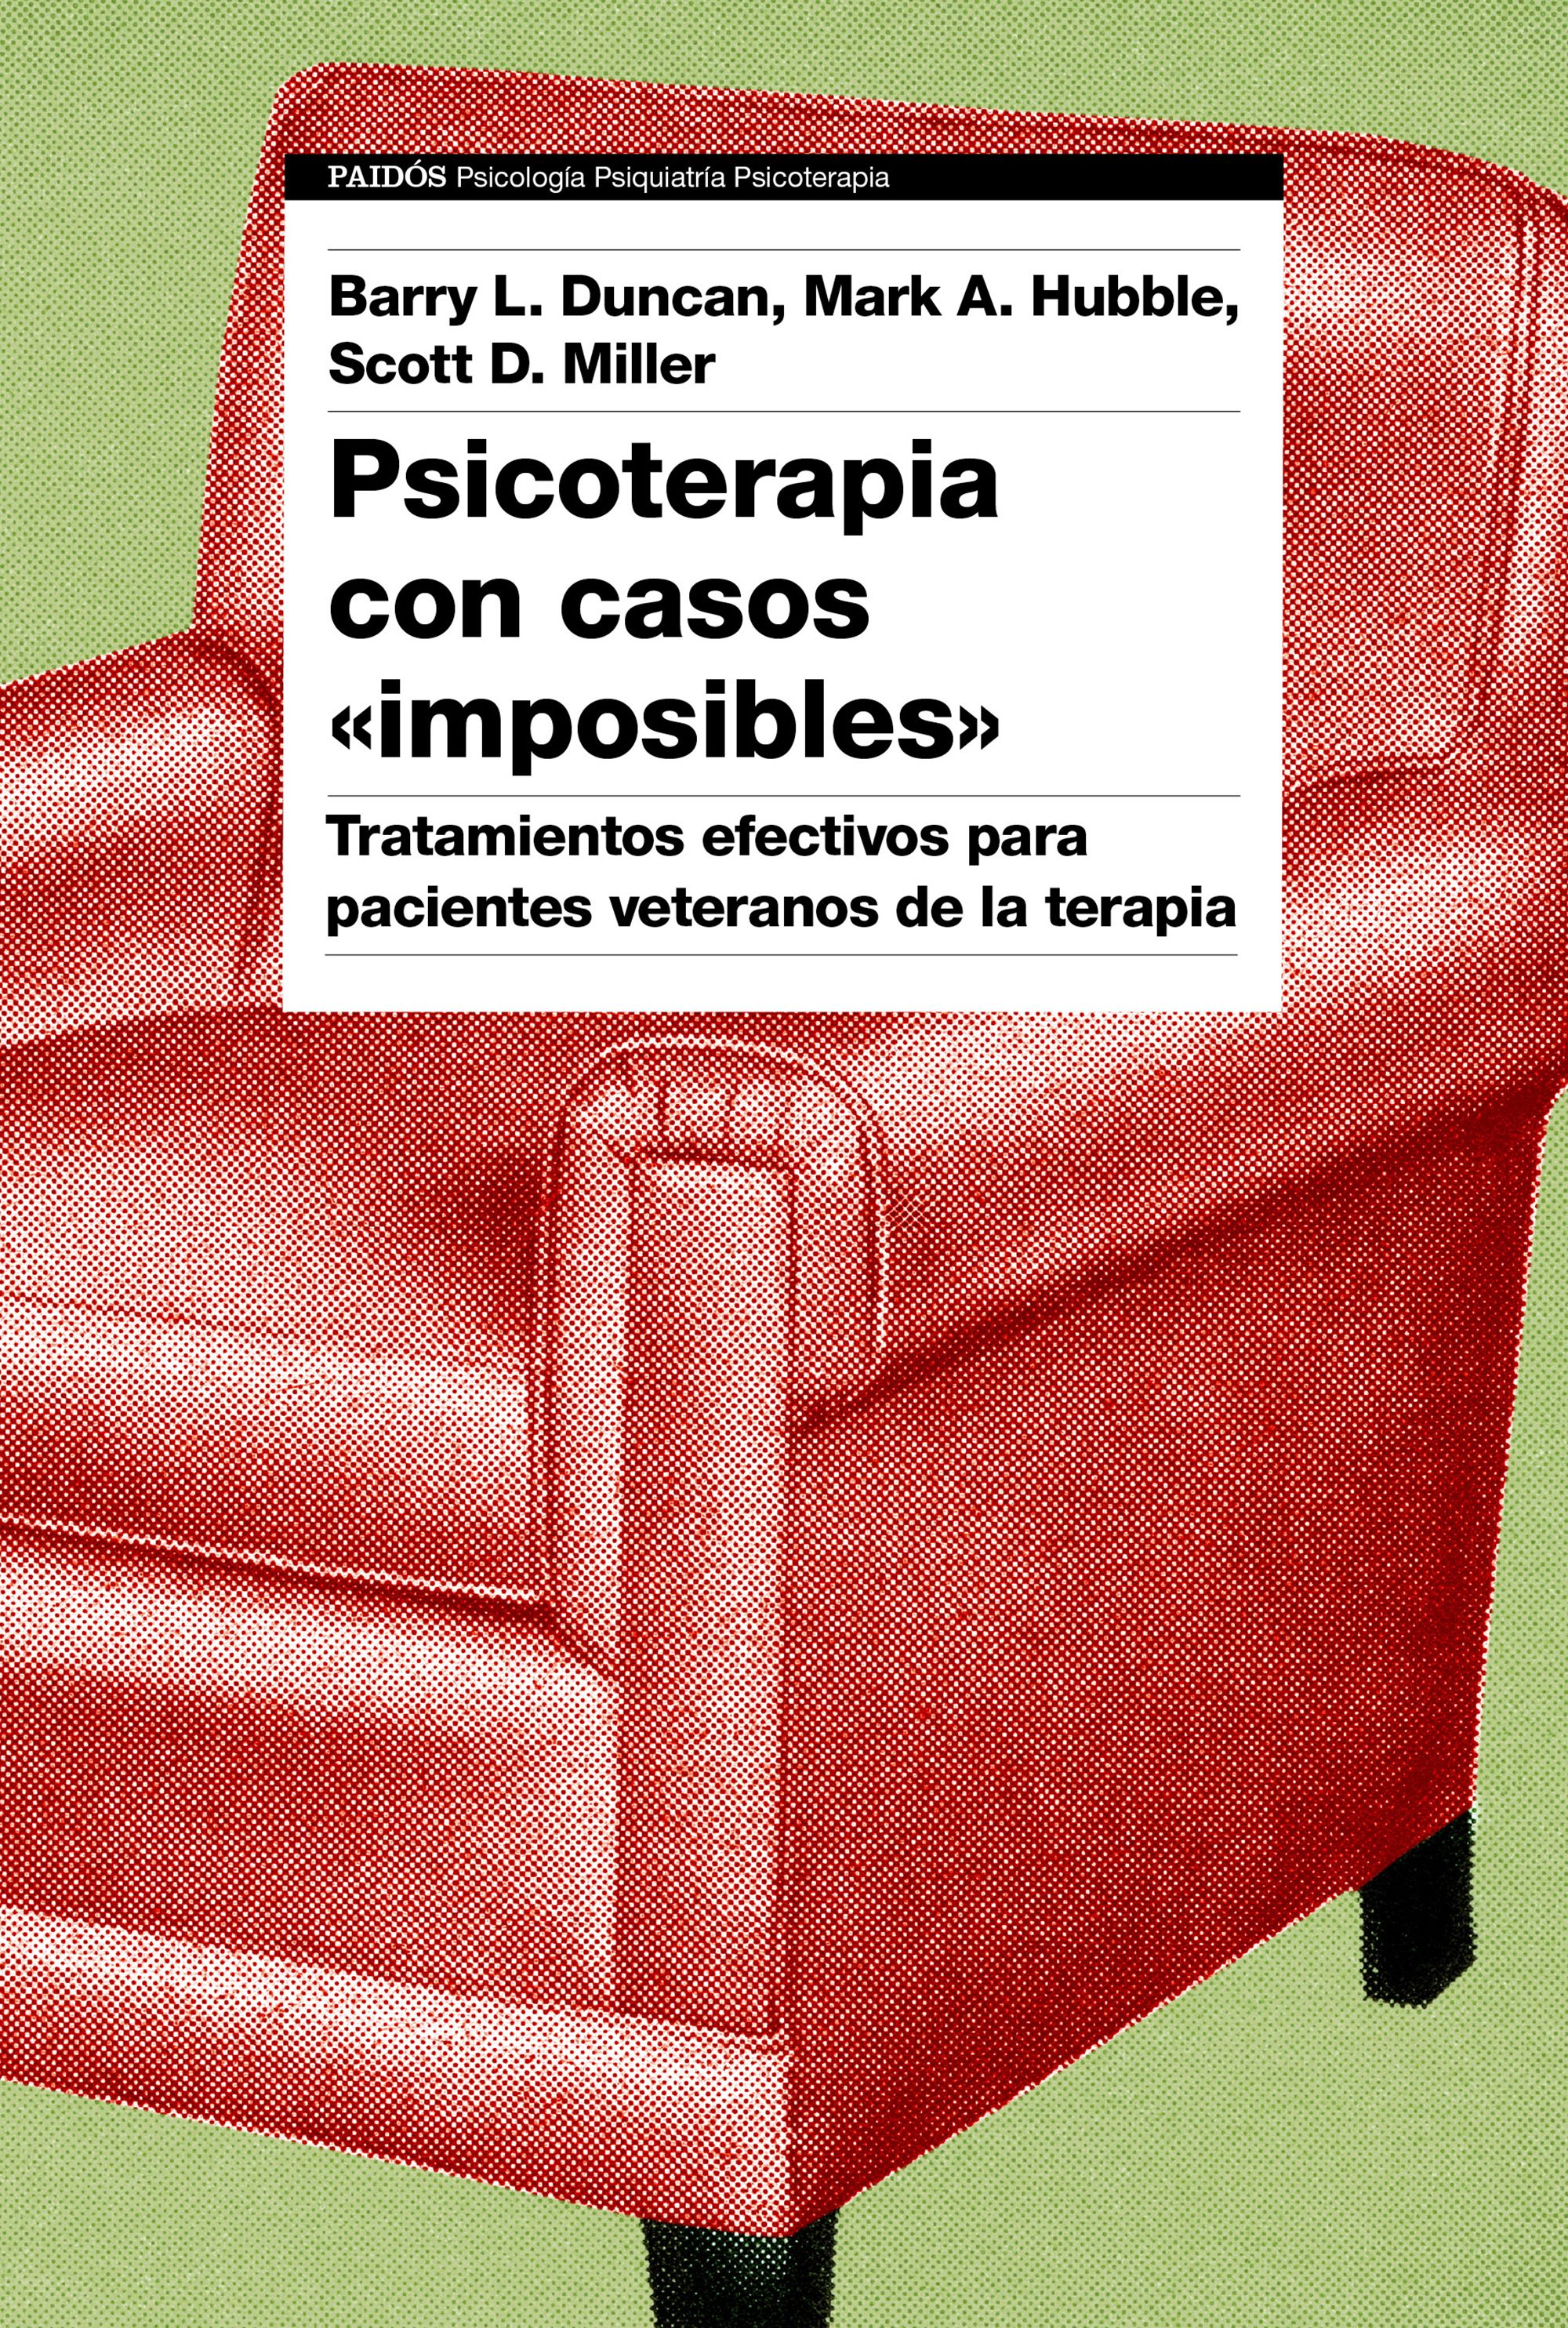 Psicoterapia con casos "imposibles". 9788449339882